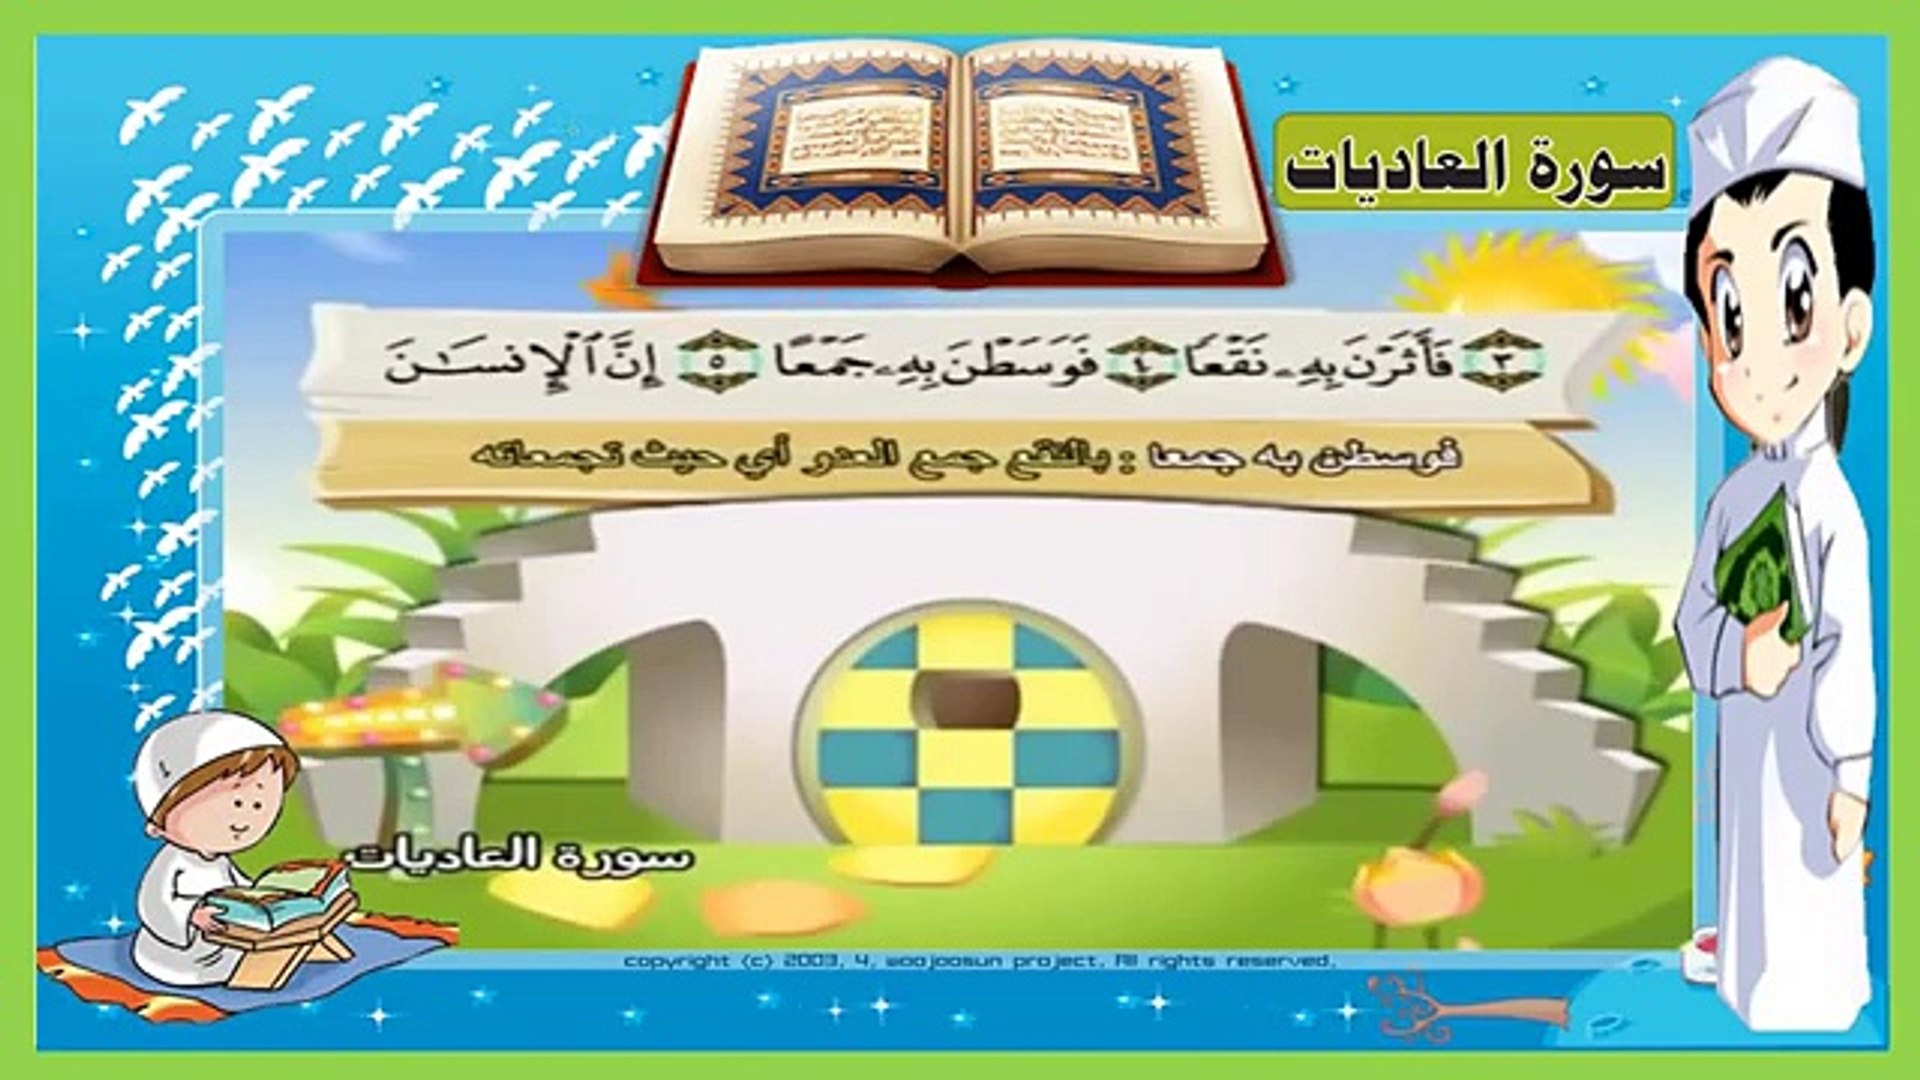 تعليم سورة العاديات - مكررة 3 مرات - تحفيظ سور القرآن للاطفال بالتكرار - -  Vidéo Dailymotion